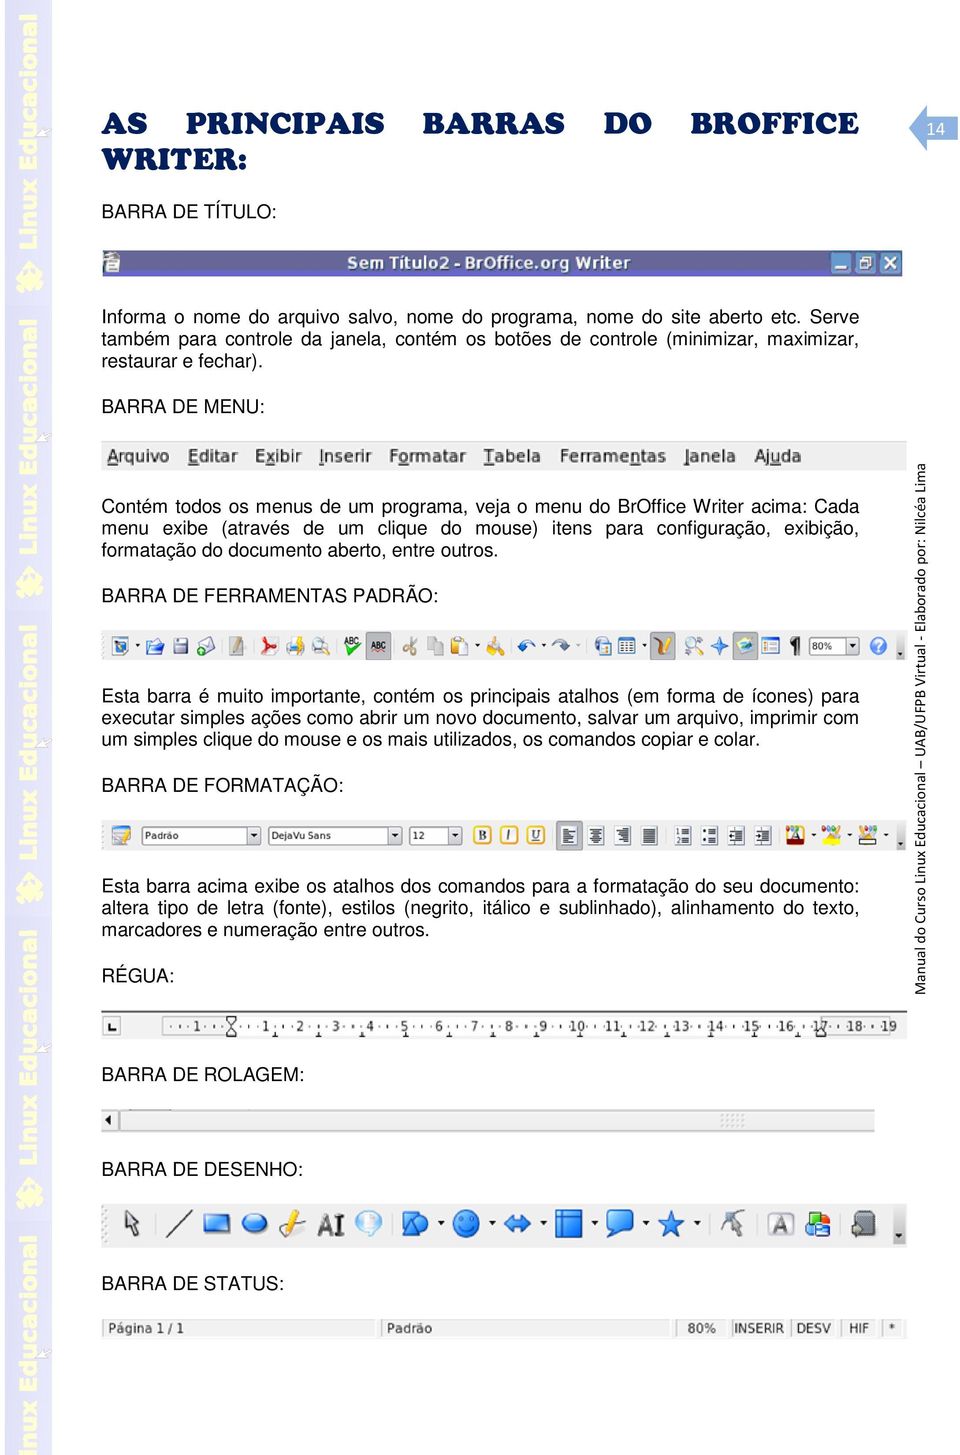 BARRA DE MENU: Contém todos os menus de um programa, veja o menu do BrOffice Writer acima: Cada menu exibe (através de um clique do mouse) itens para configuração, exibição, formatação do documento